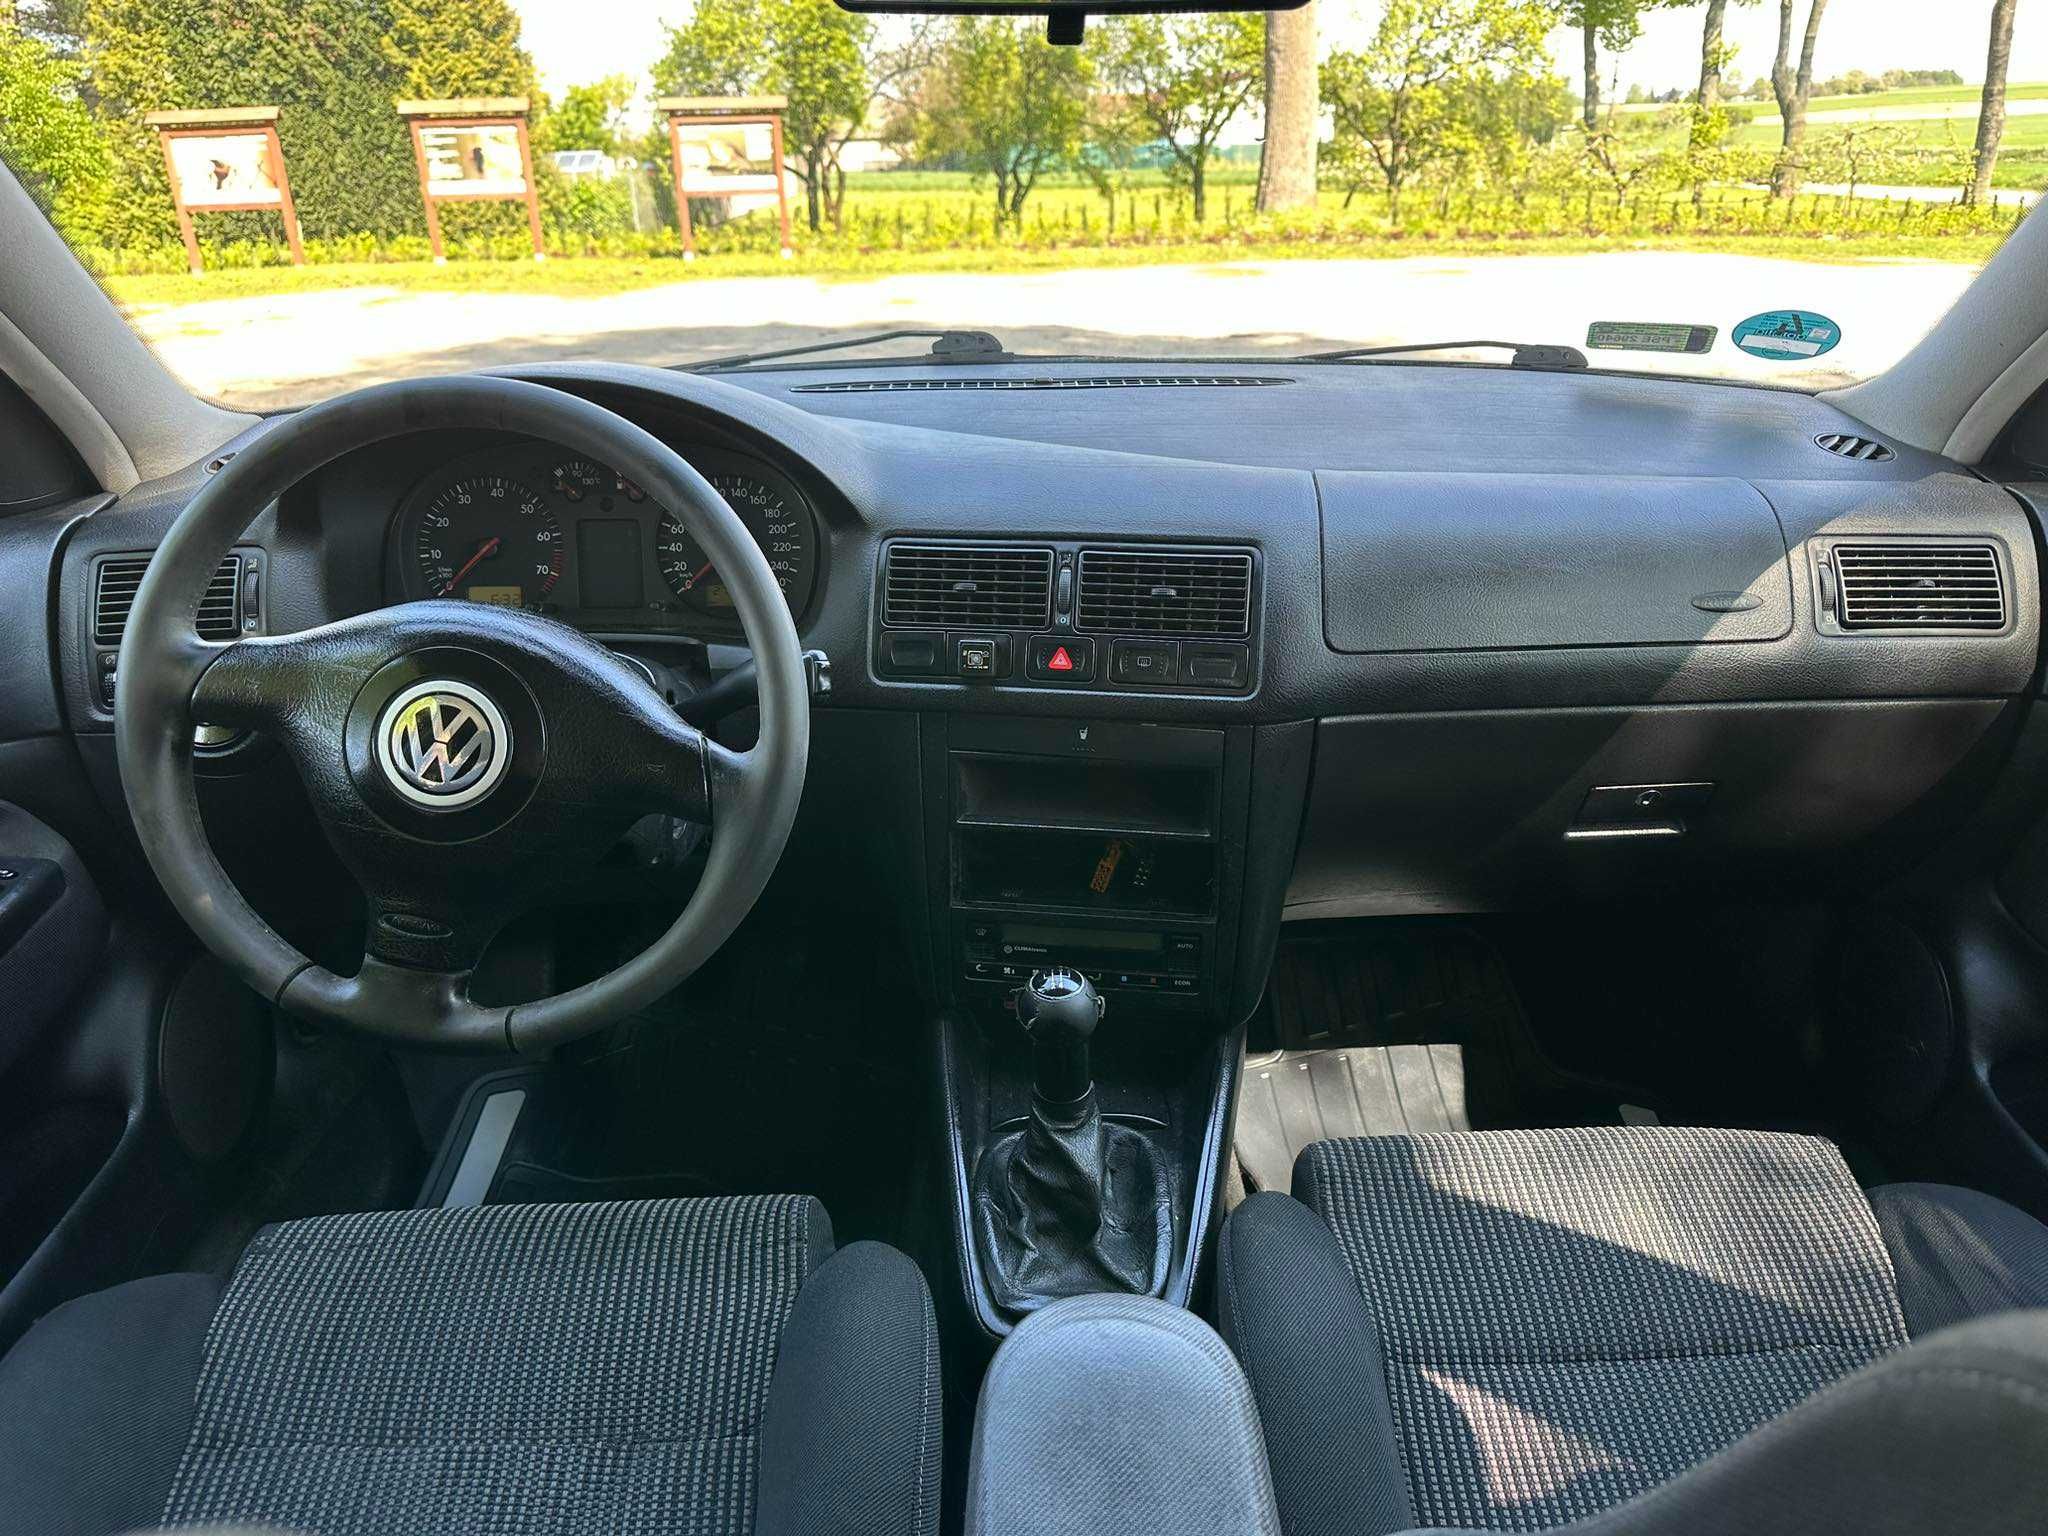 Volkswagen GOLF 1.6SR + Instalacja Gazowa Właściciel HAK